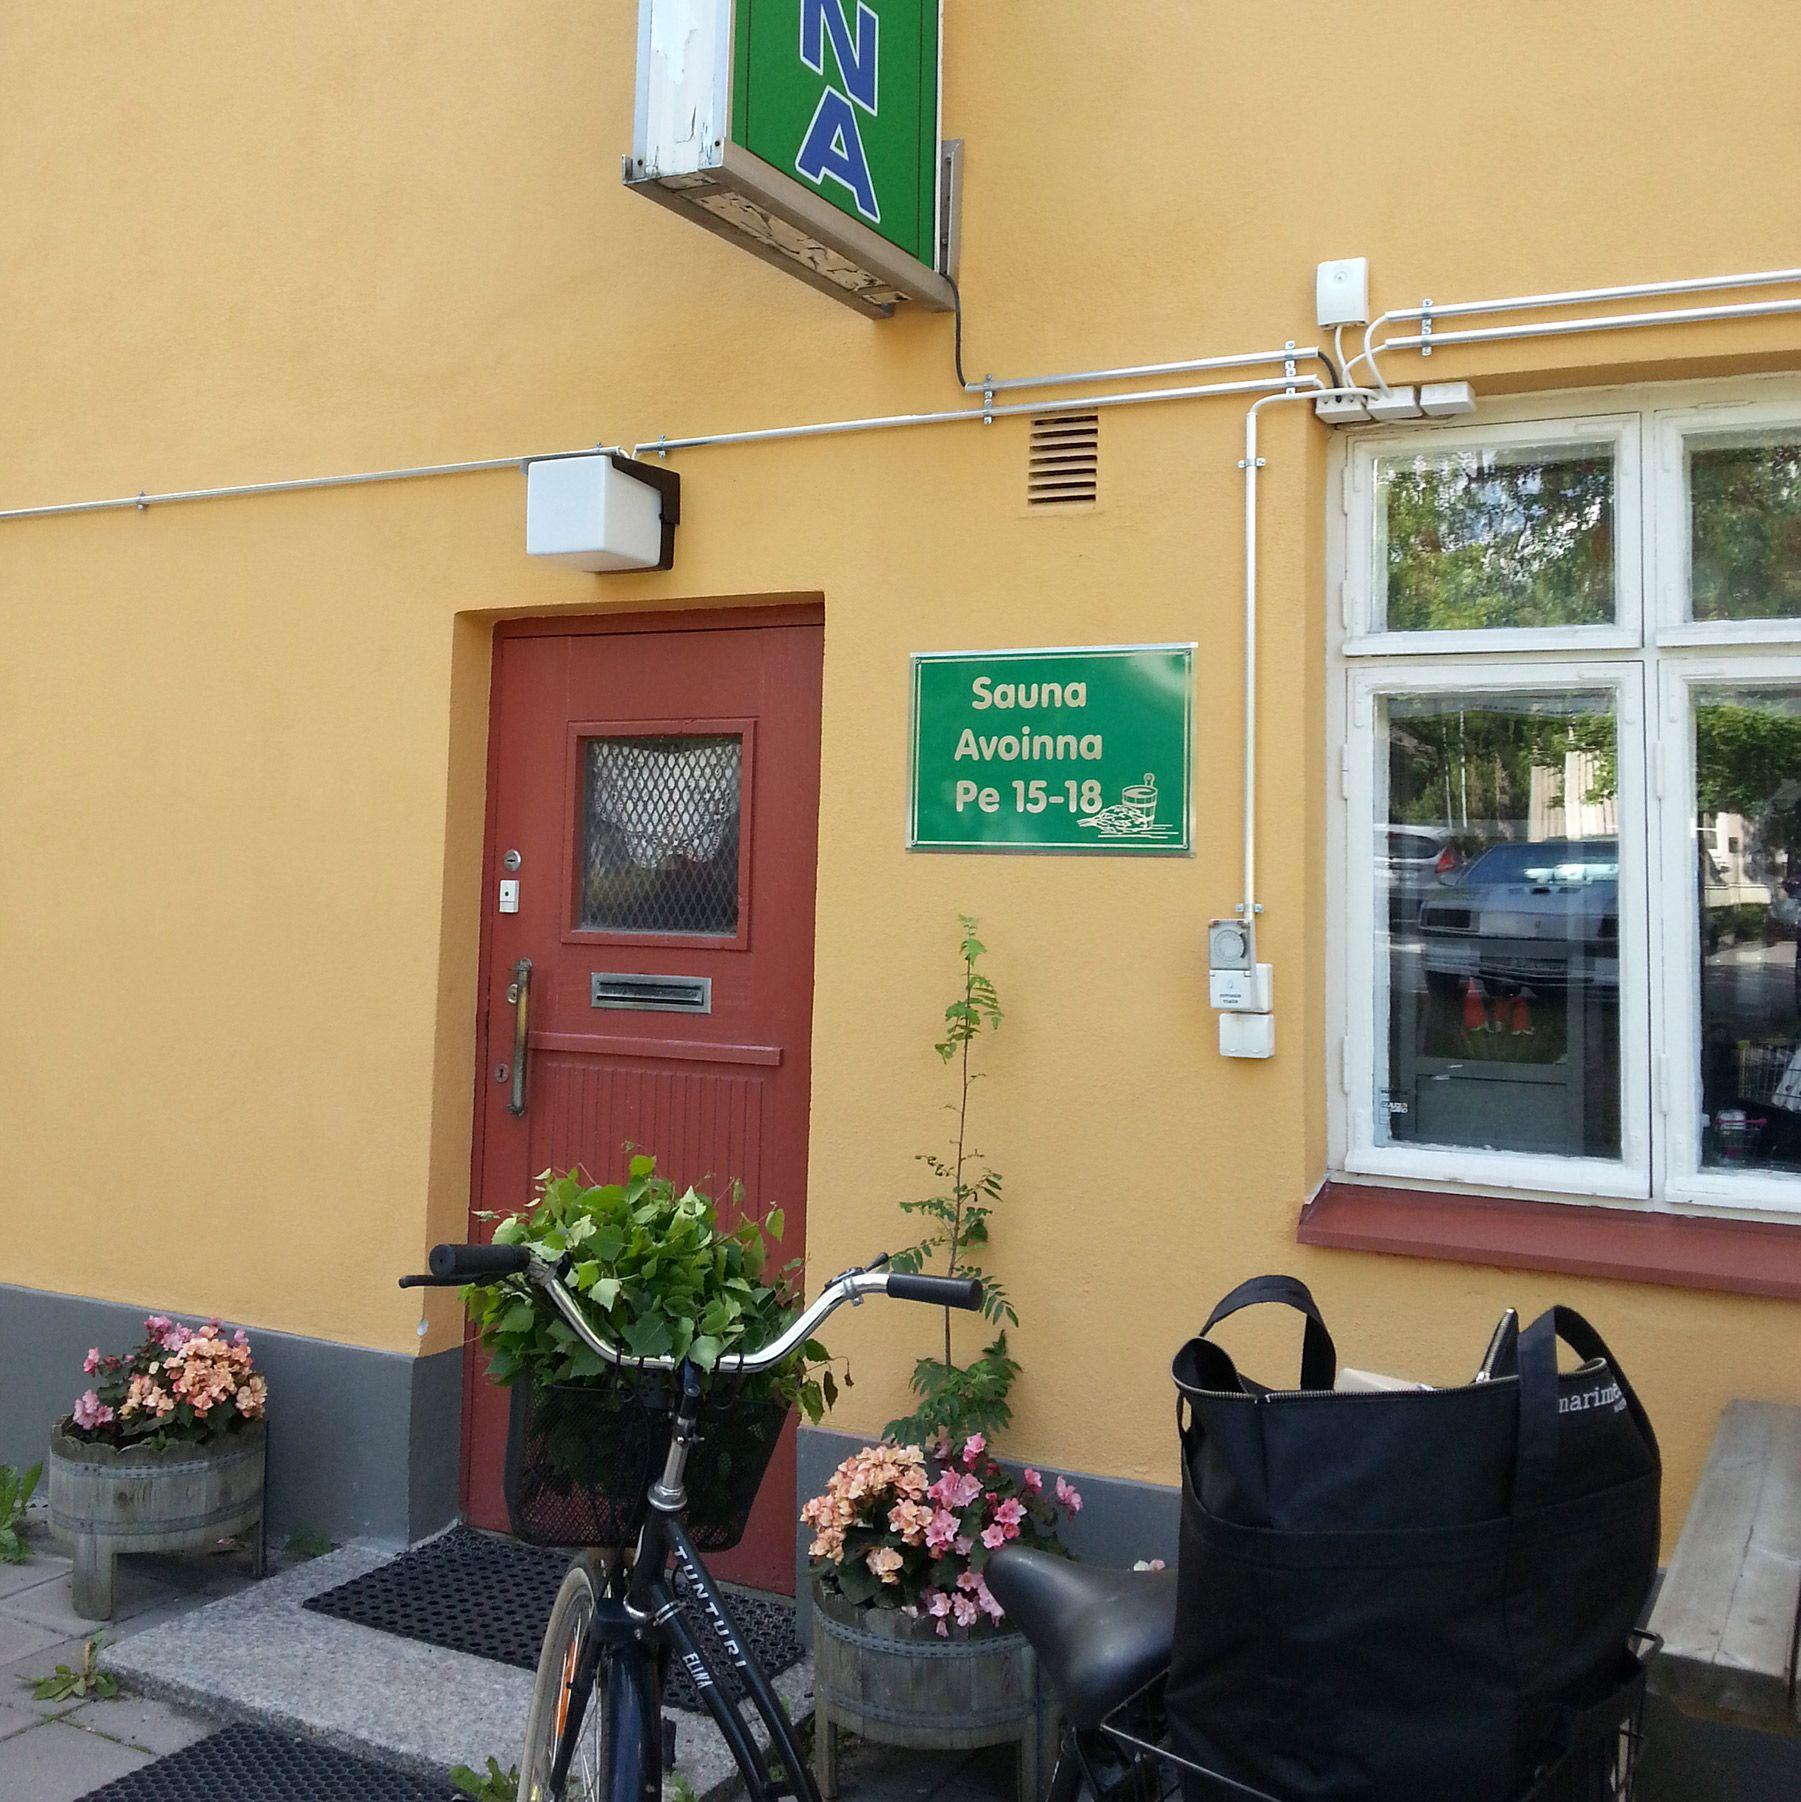 Pyörä Forum Saunan ovella.